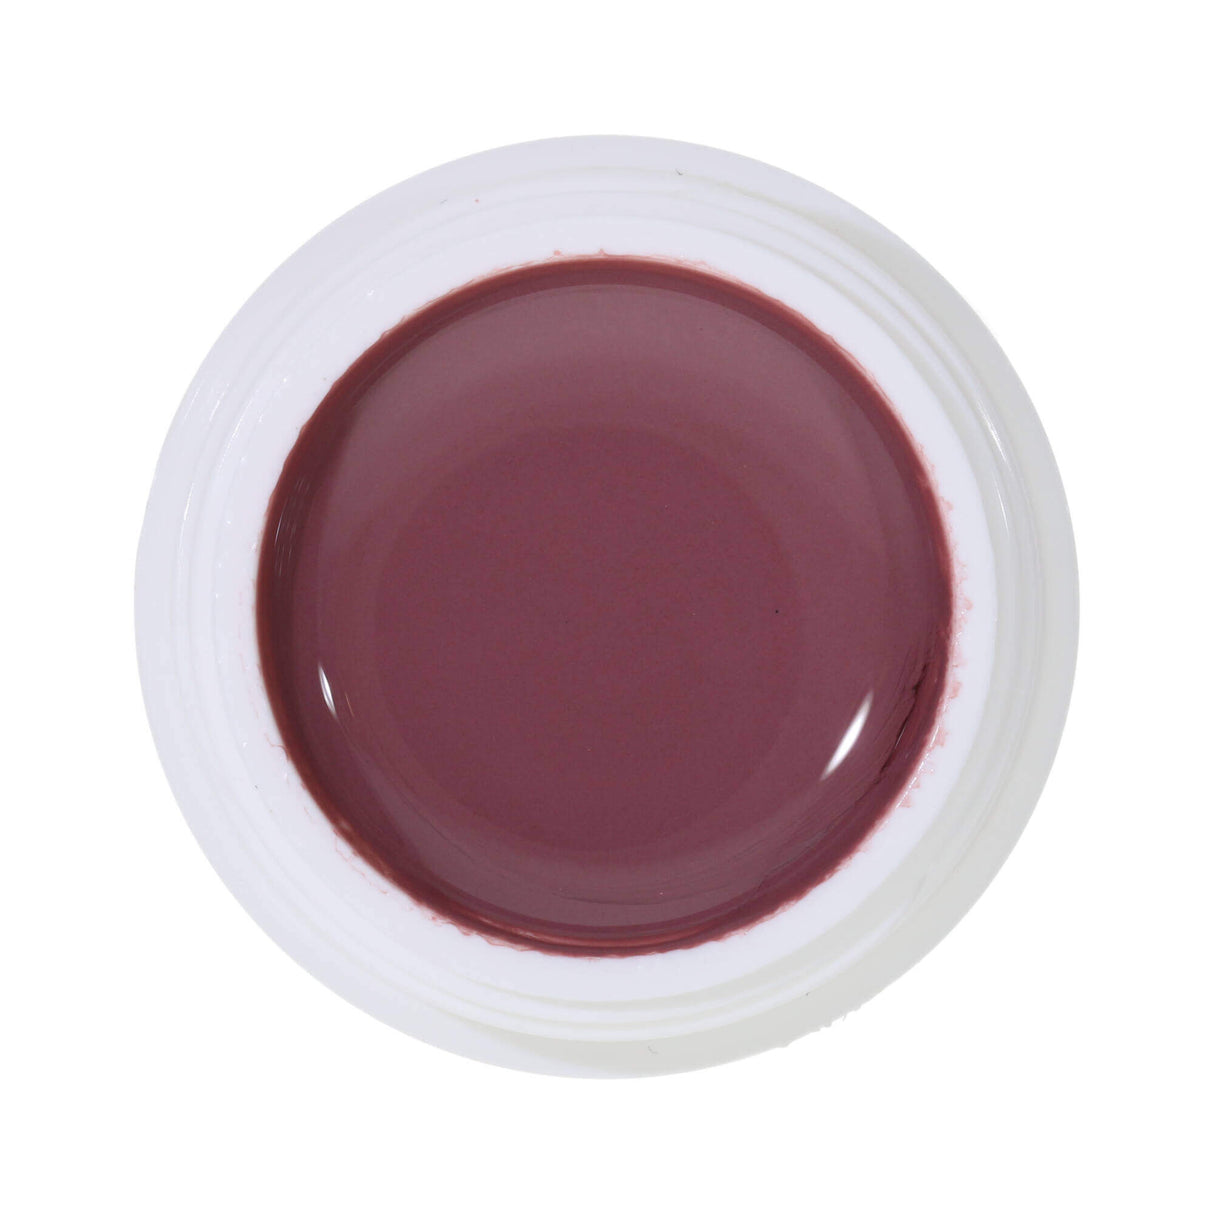 # 363 Premium-PURE Color Gel 5ml rose-brown